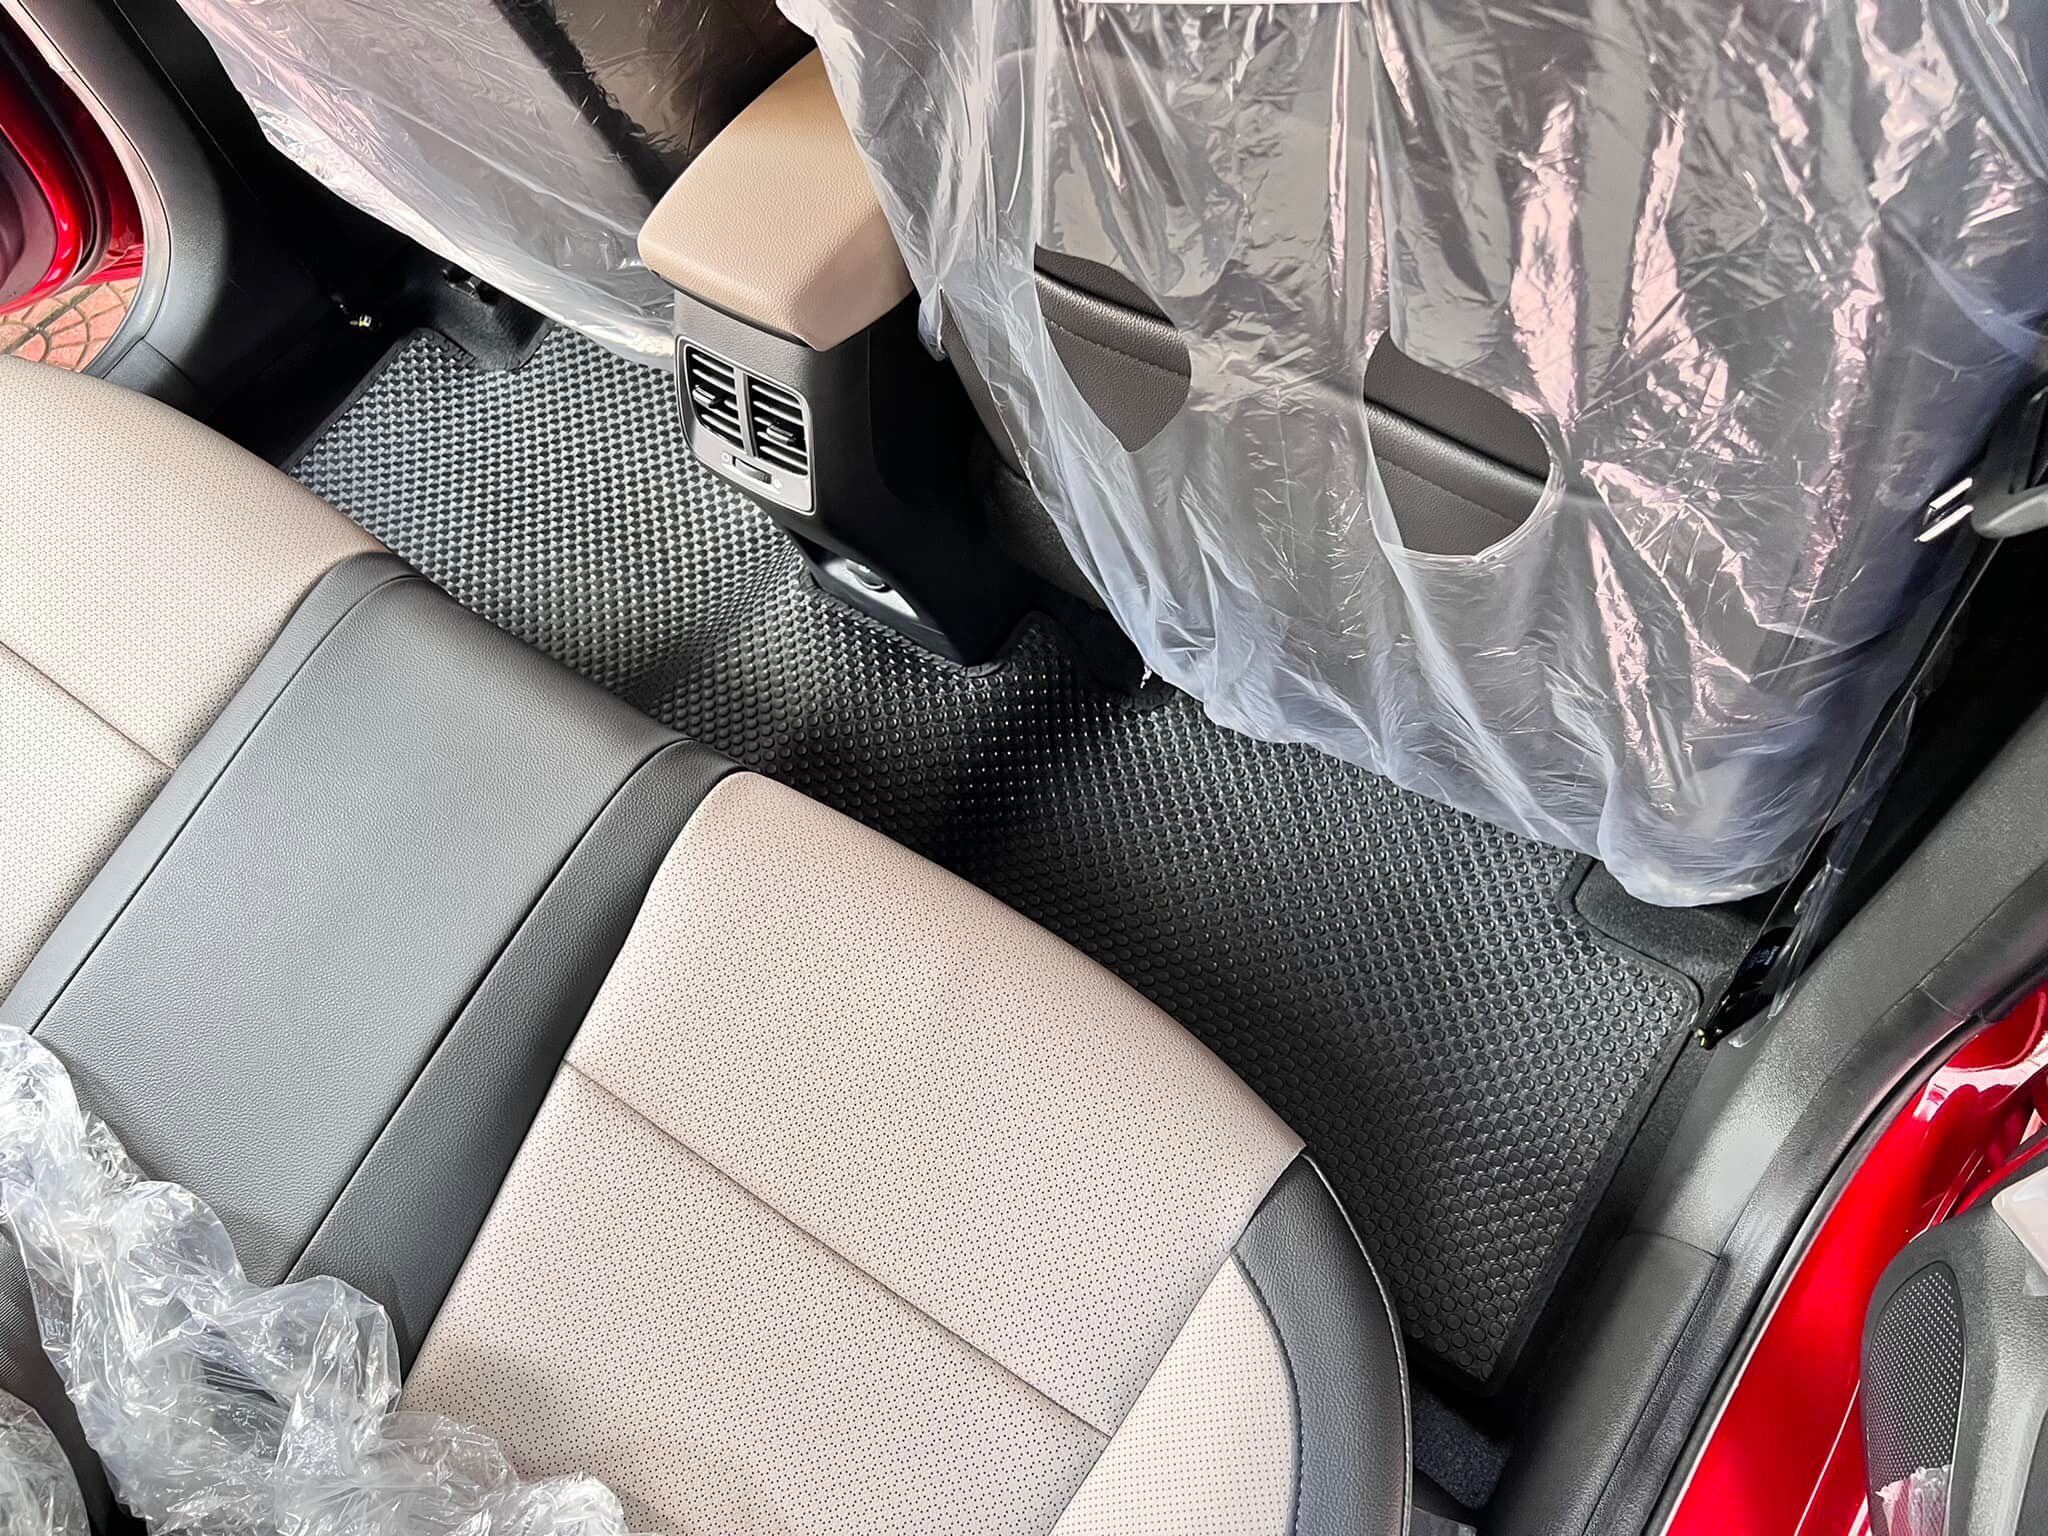 Thảm lót sàn ô tô KATA cho xe Hyundai Accent (2018 - 2023) - Khít với sàn xe, Chống trơn, Không mùi, Không ẩm mốc